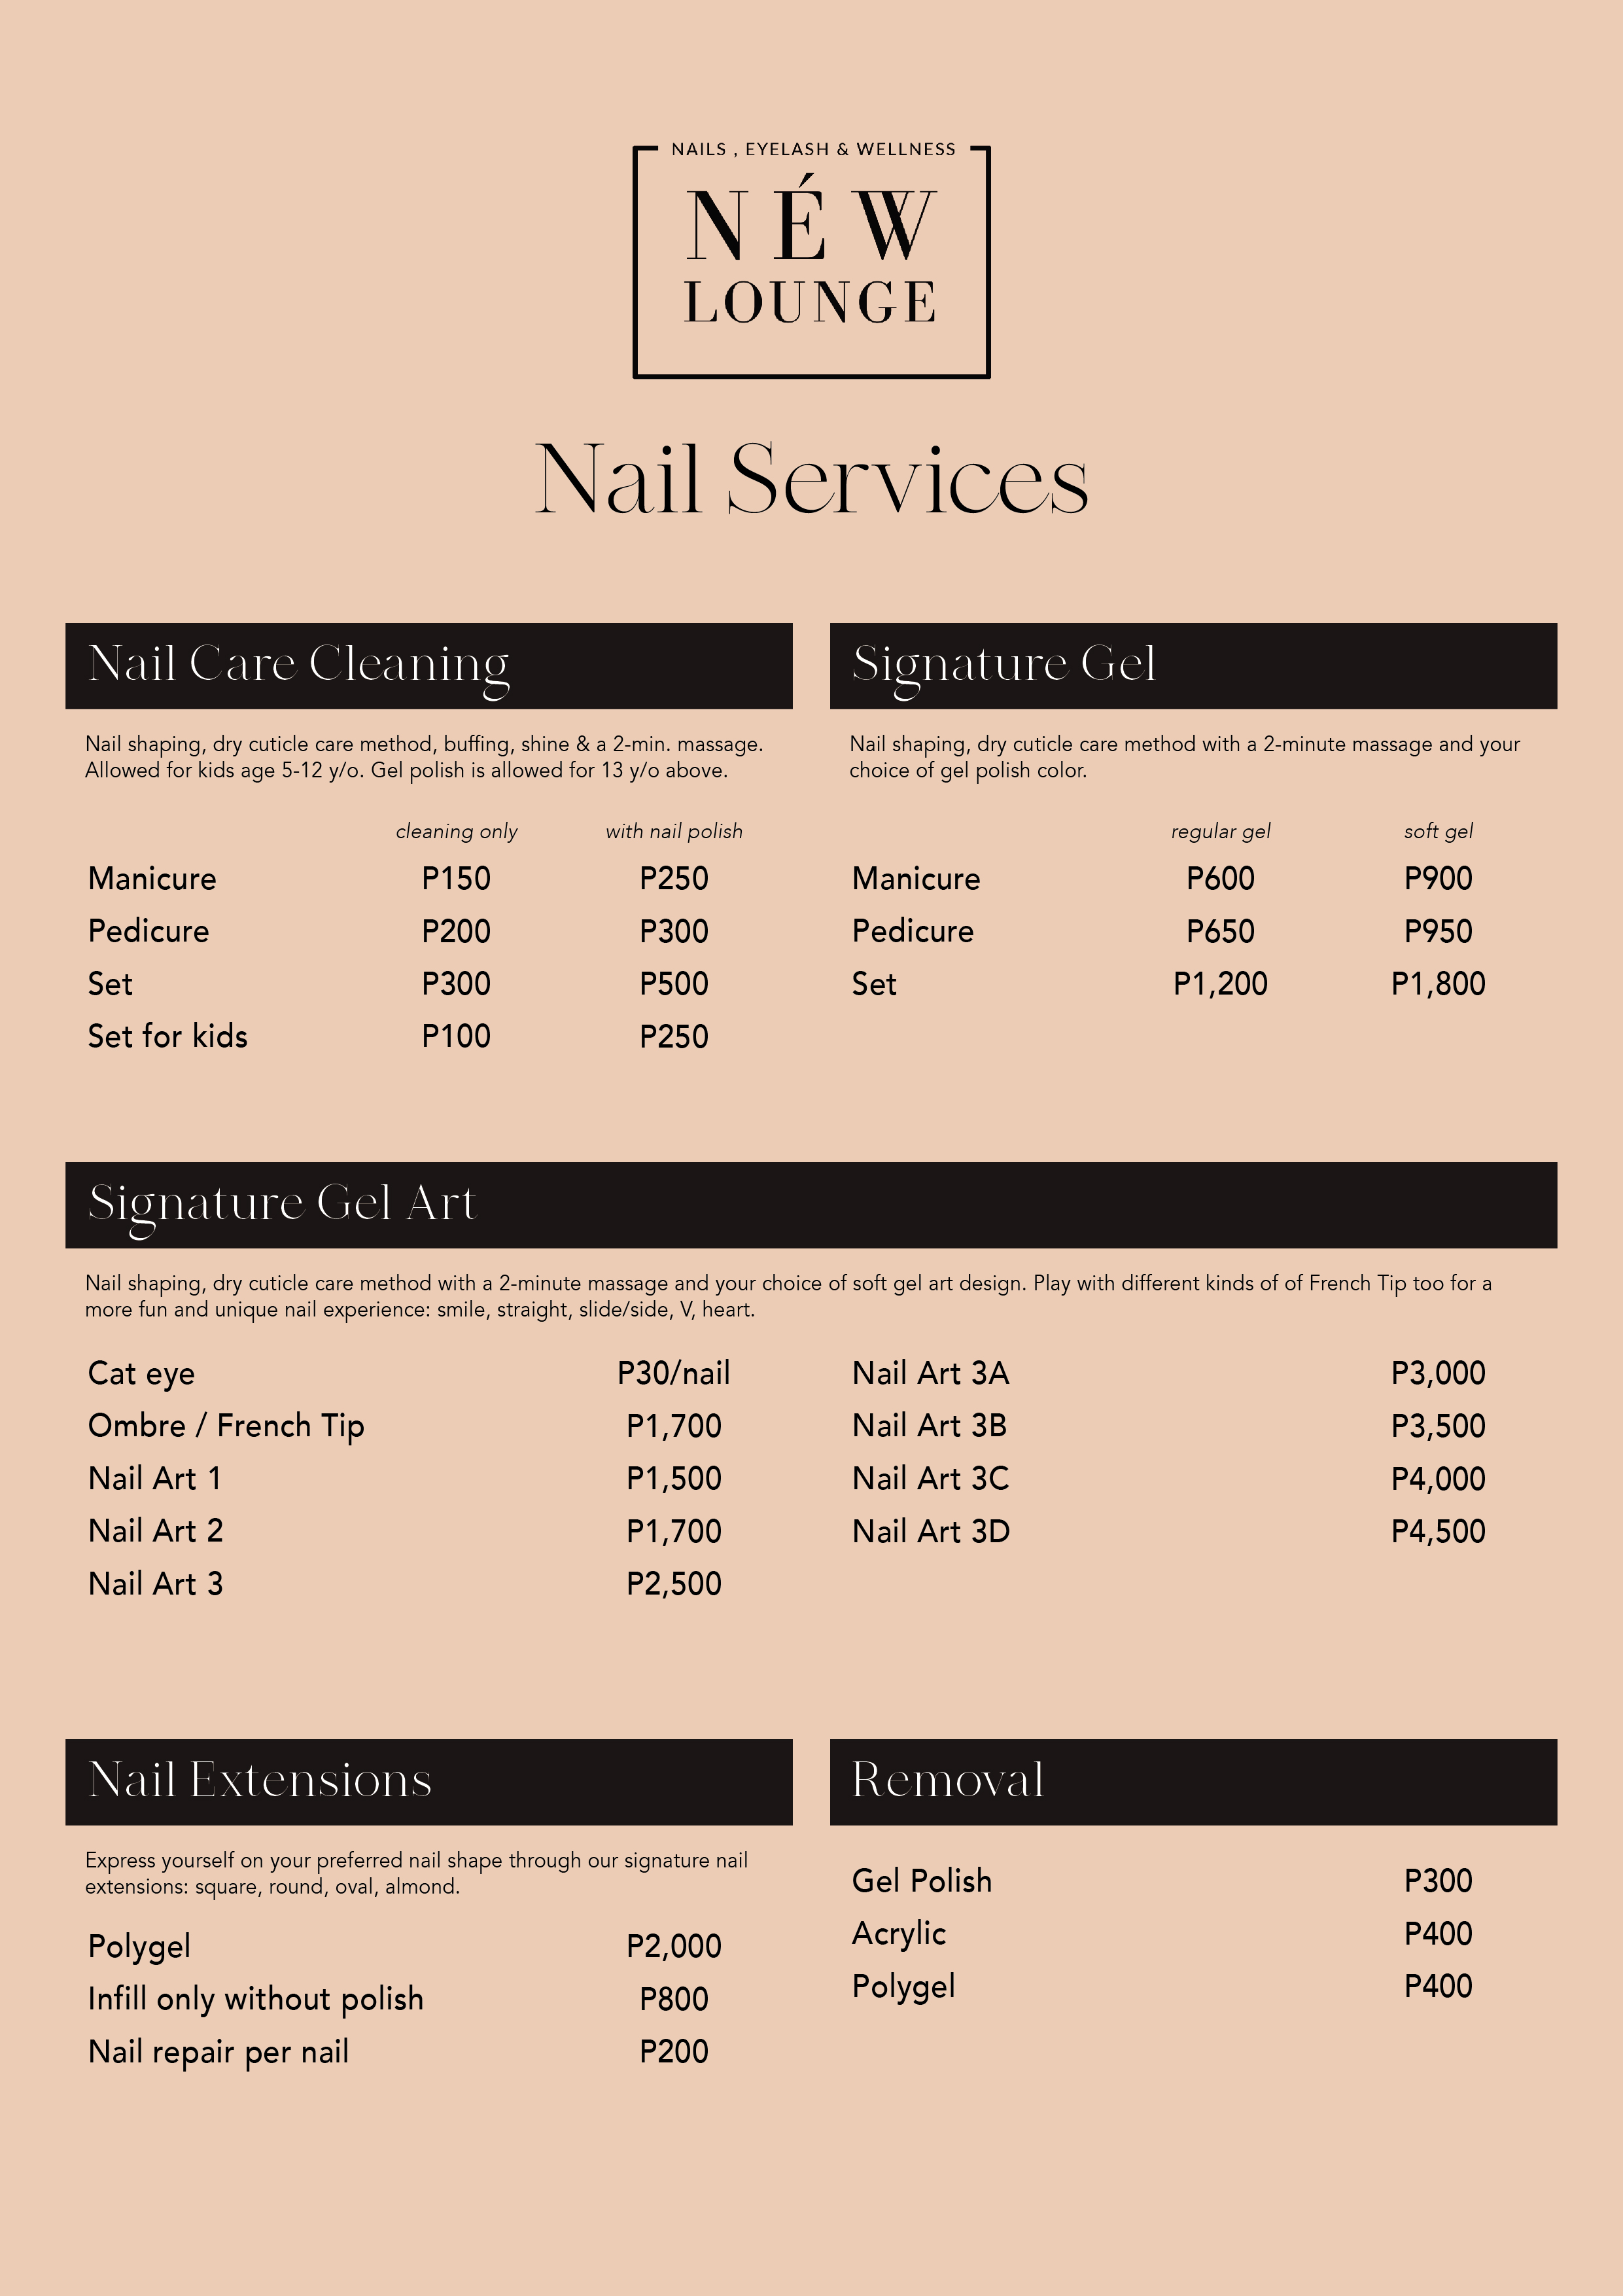 Nail Services — NÉW Lounge PH